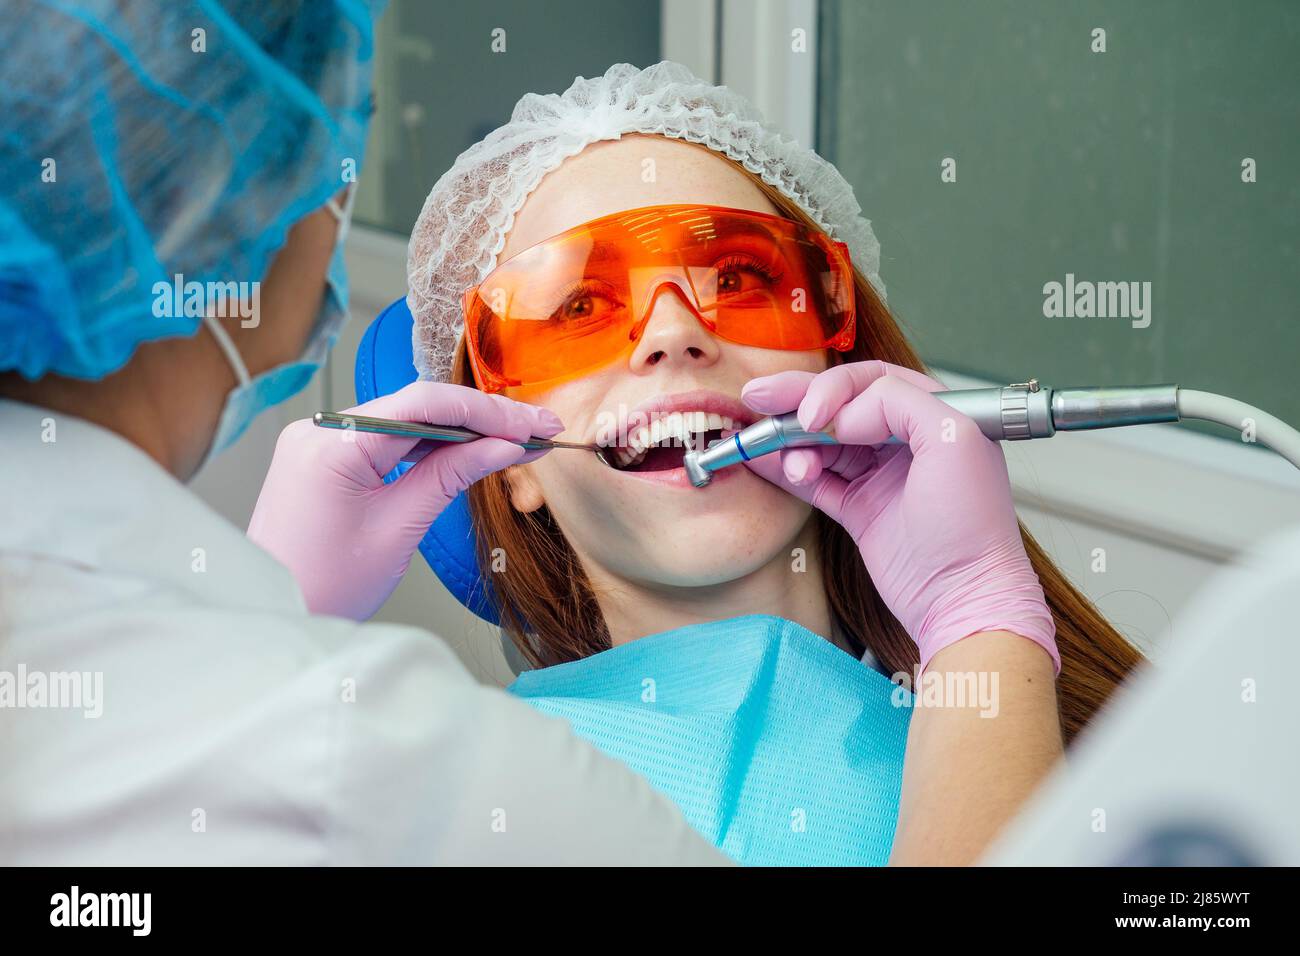 Portrait d'une belle fille client souriante au gingembre rougeâprée dans une chaise dentaire dans un cabinet dentaire.elle n'est pas peur Banque D'Images